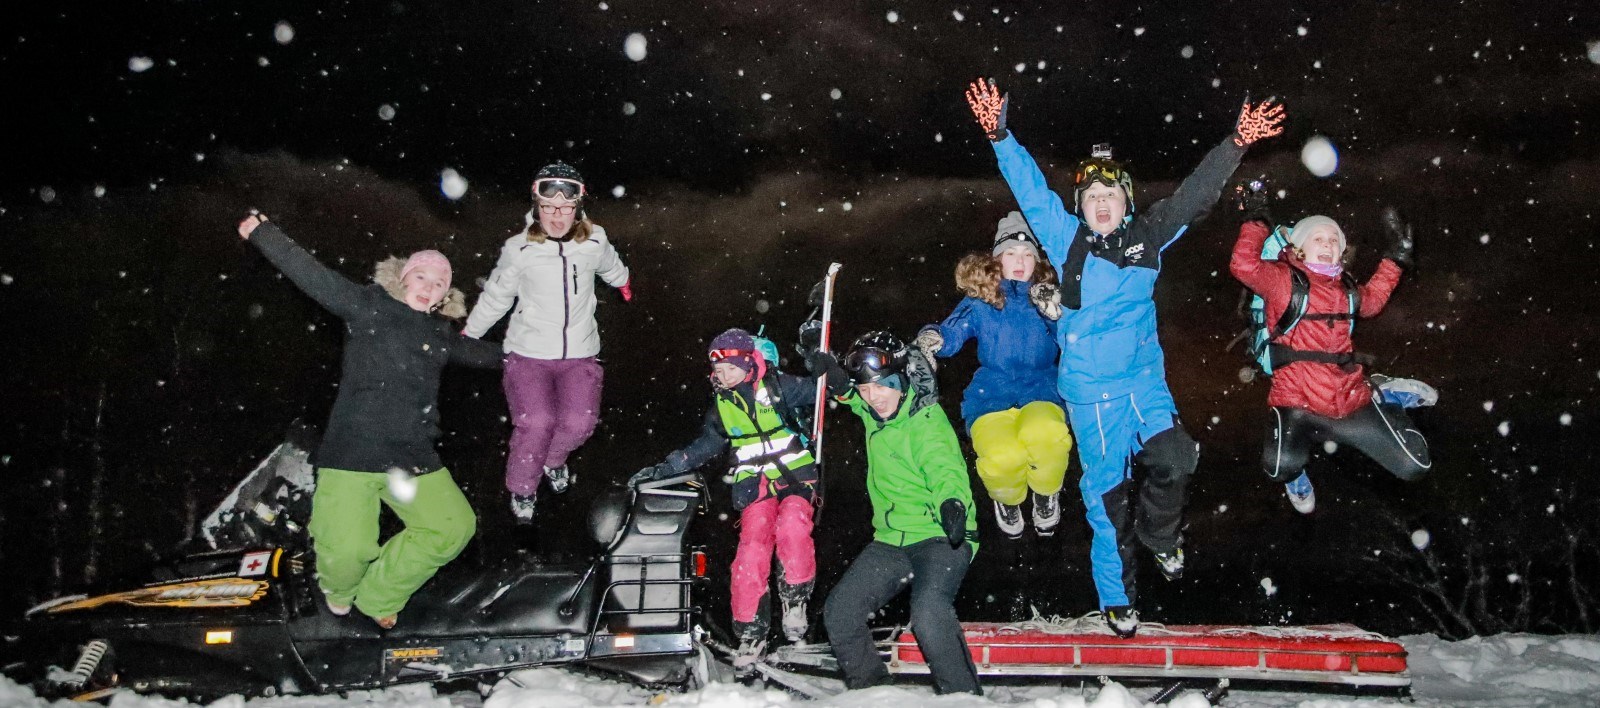 Fotografiet viser 7 ungdommer som hopper fra en snøskuter mens de ser i kameraet og strekker hendene i været.